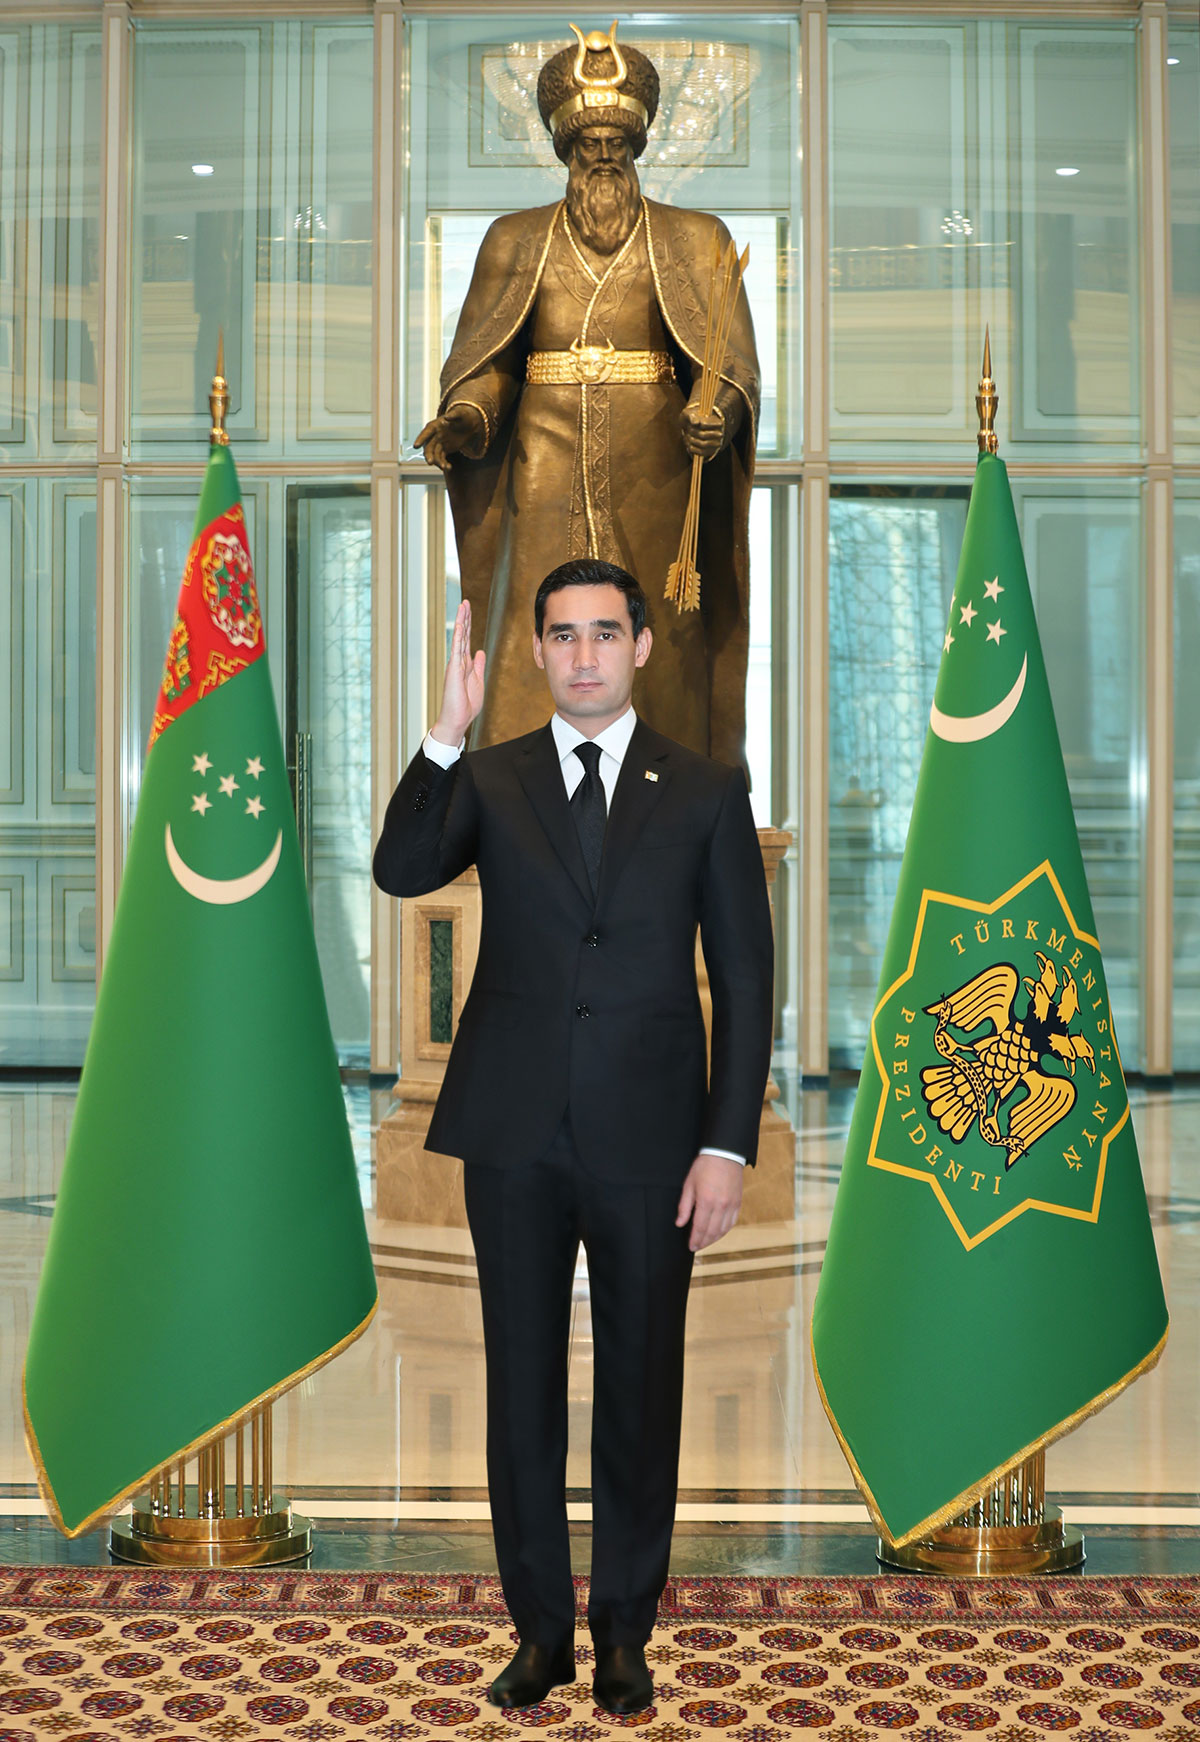 Türkmenistanyň Prezidenti ýurdumyzyň harby we hukuk goraýjy edaralarynyň şahsy düzümini gutlady